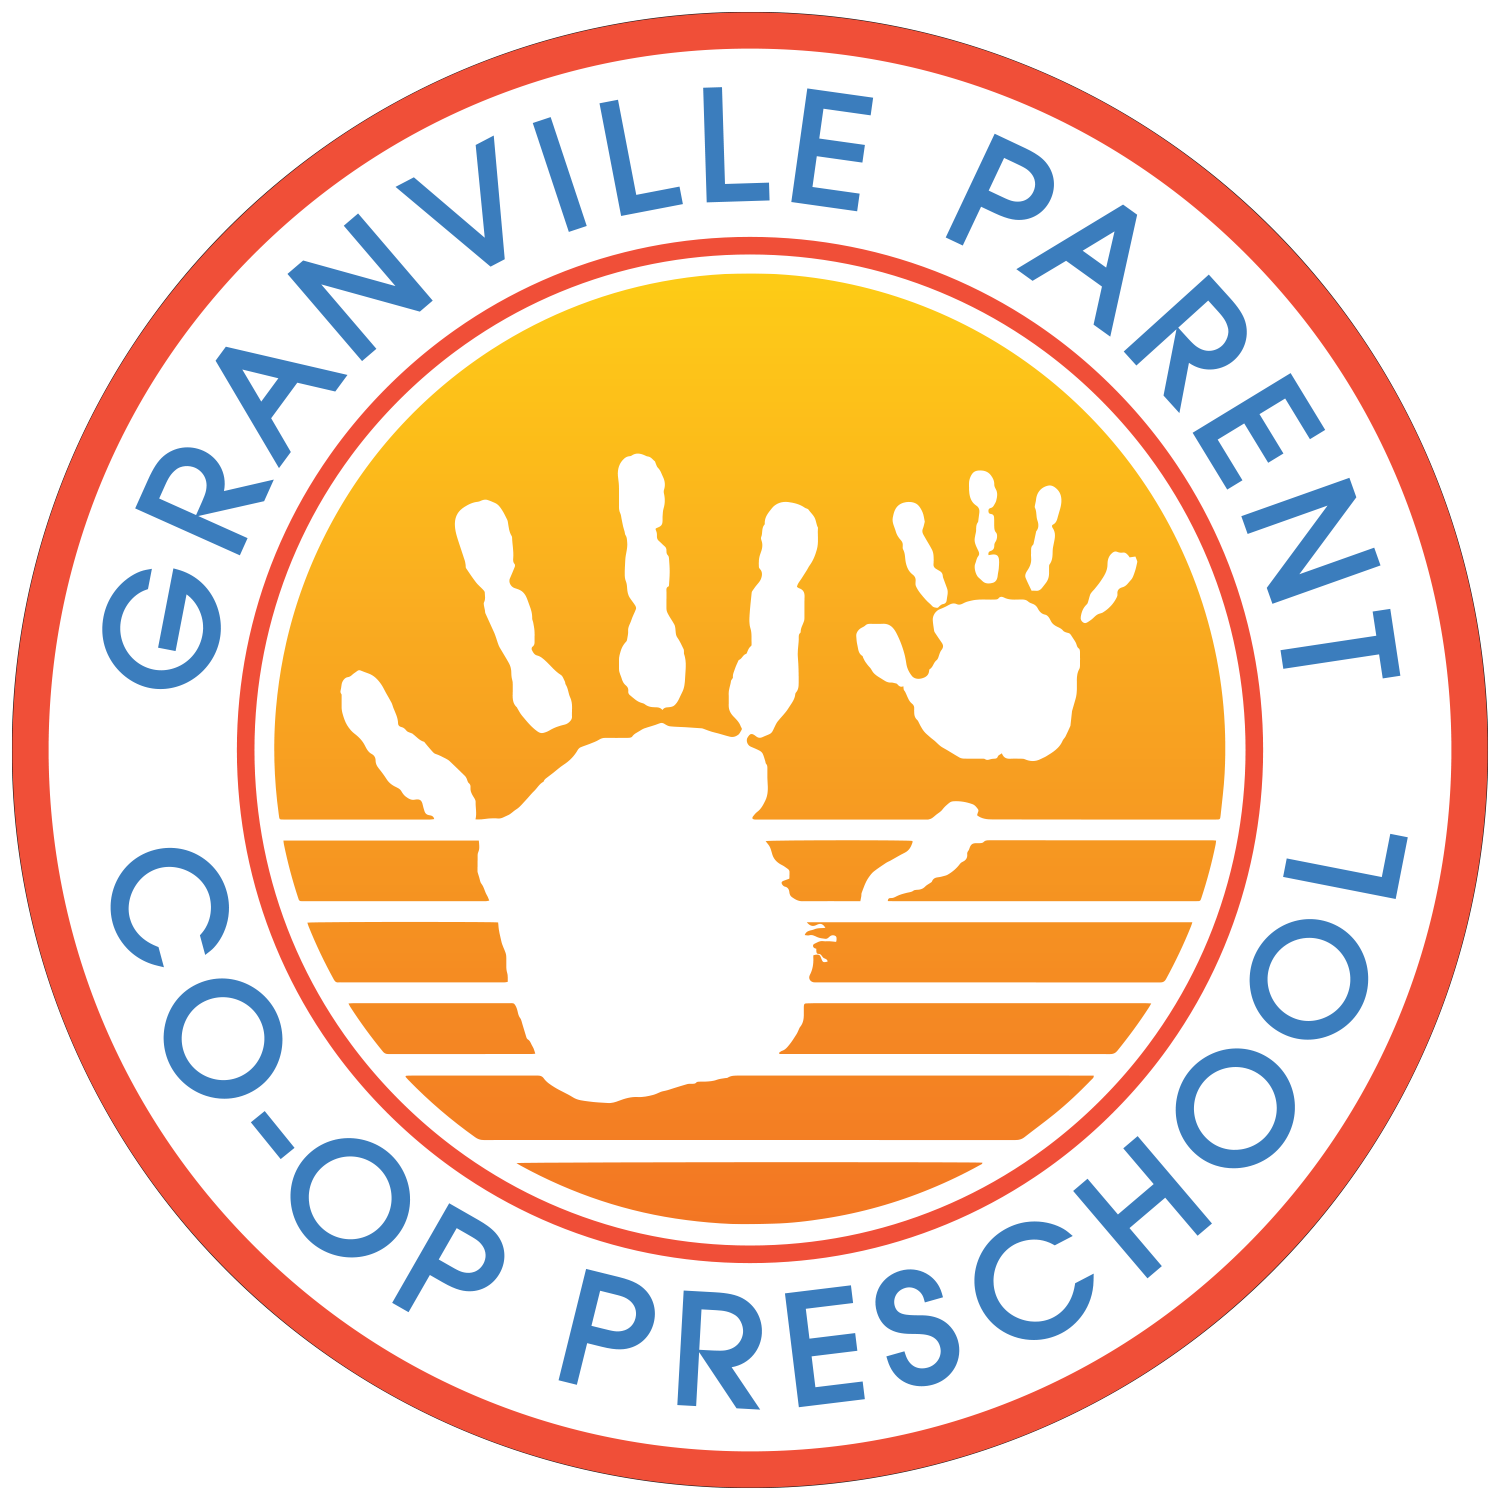 Granville Parents Co-op Preschool